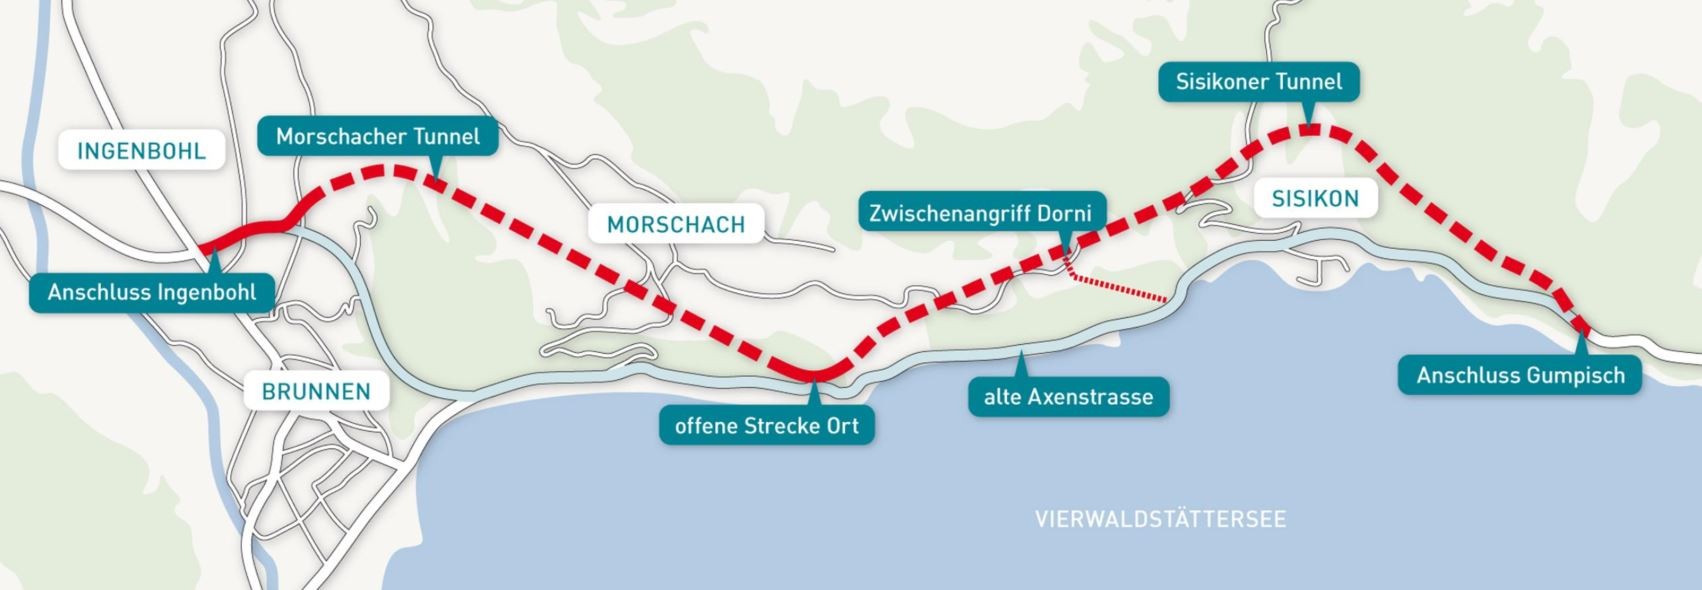 Implenia Sisikoner Tunnel - Neue Axenstrasse